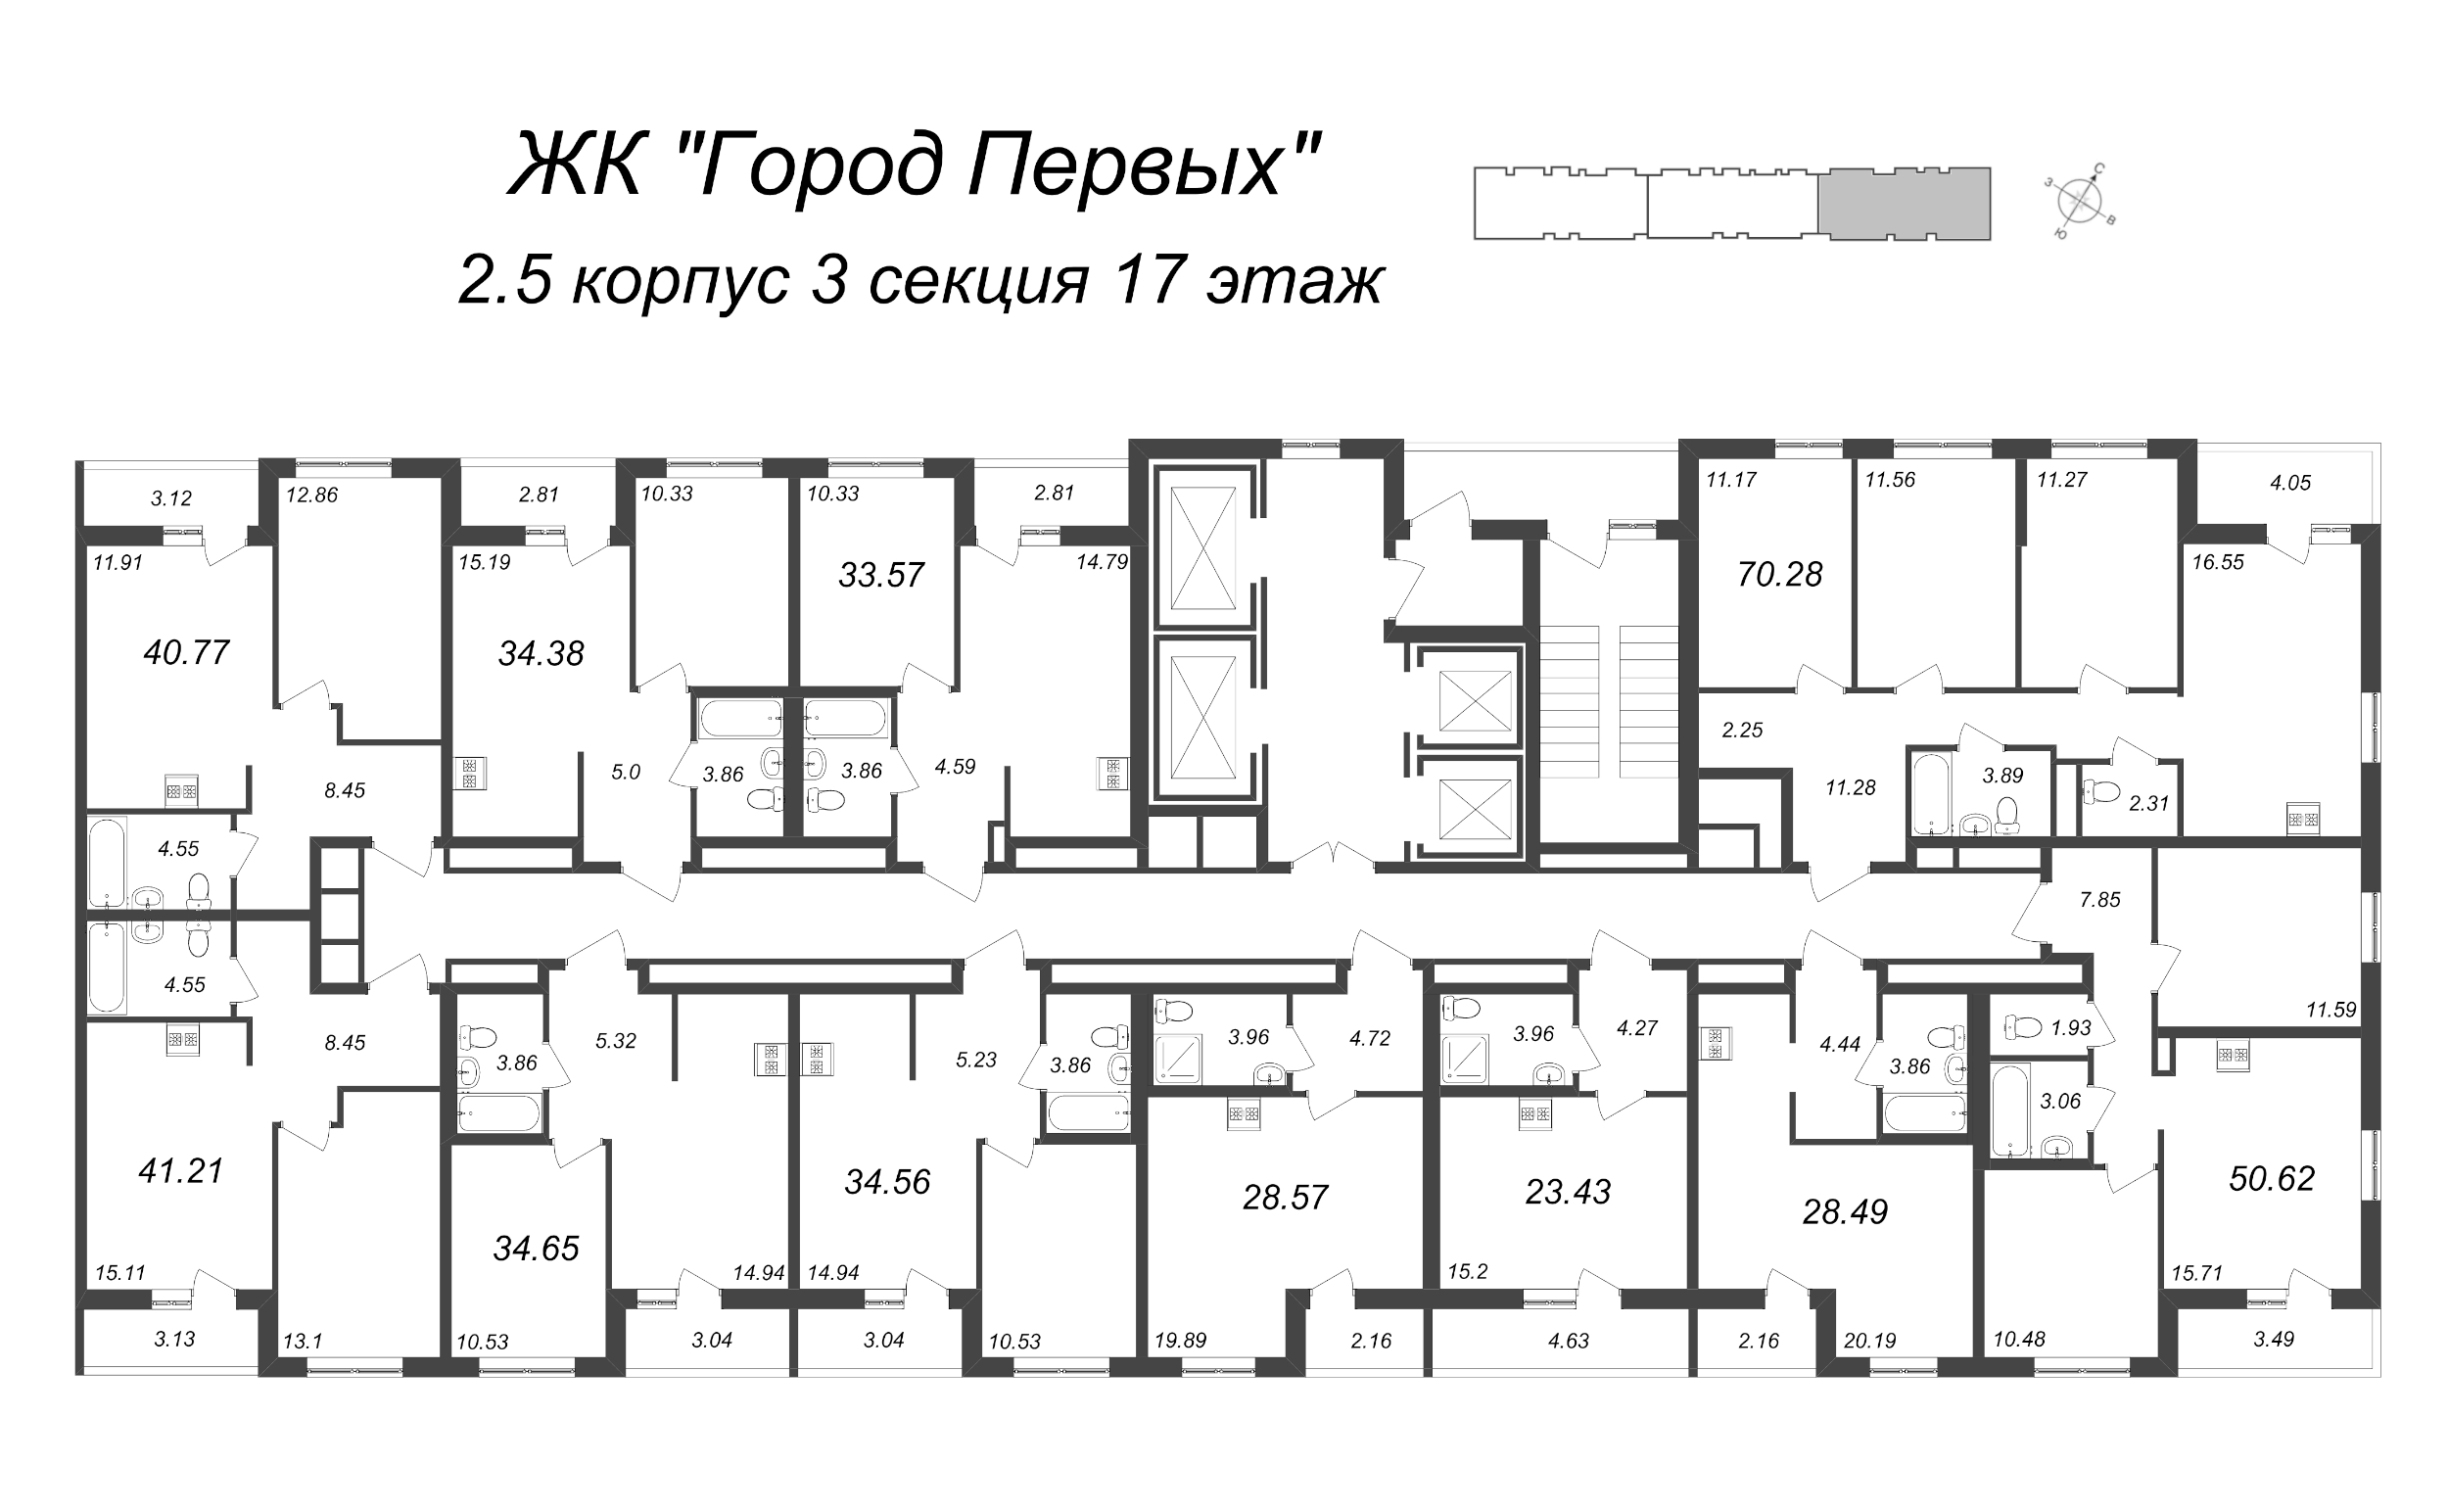 2-комнатная (Евро) квартира, 34.56 м² в ЖК "Город Первых" - планировка этажа